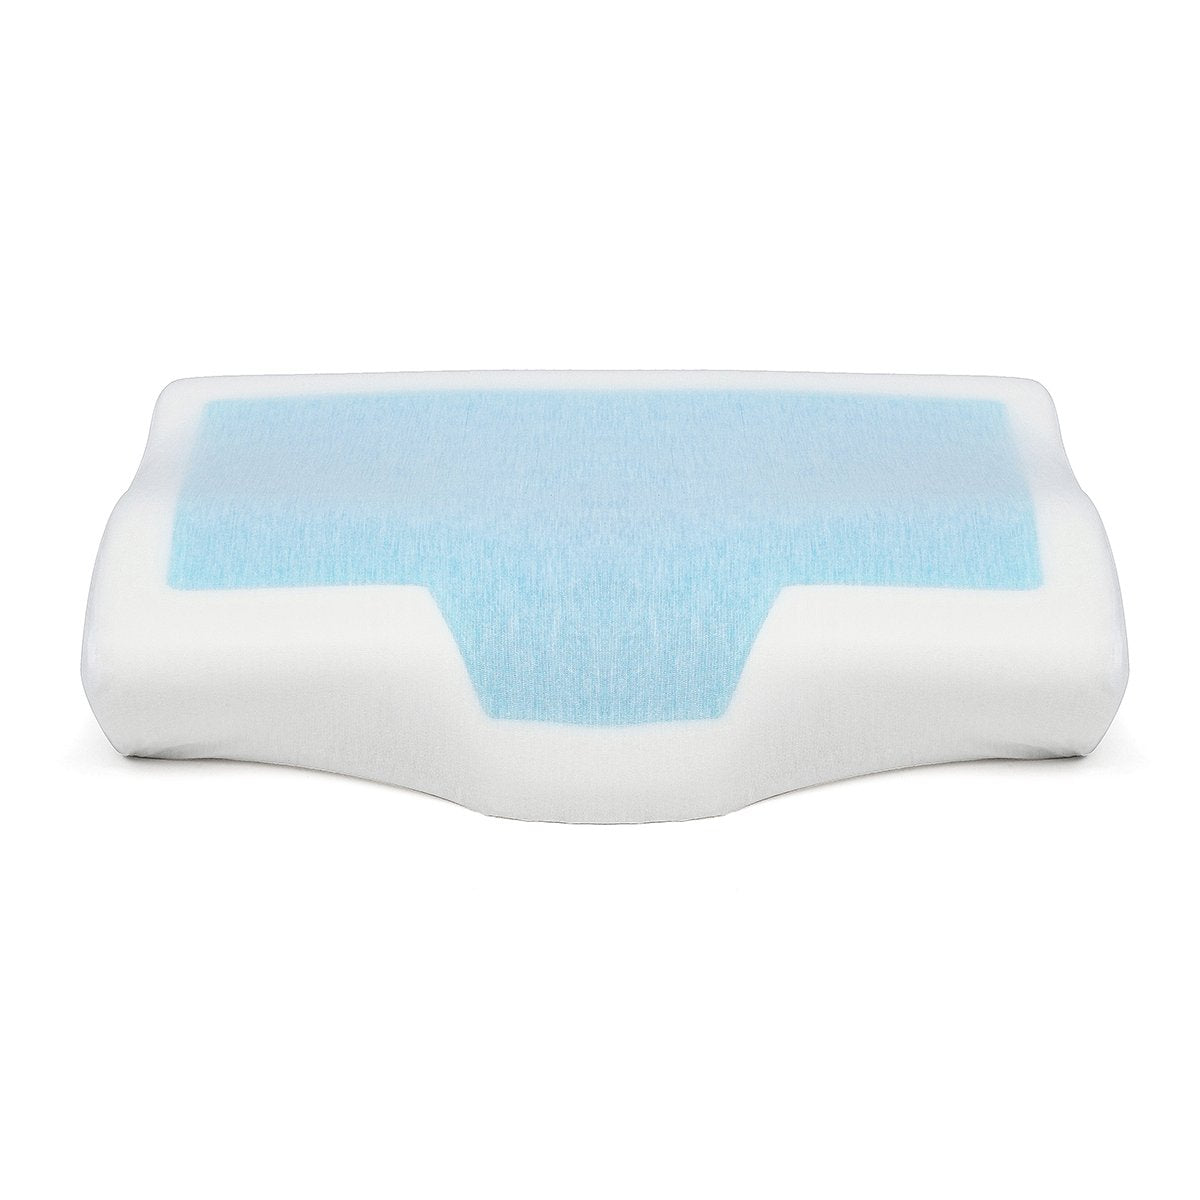 Cooling Gel Anti-snore Pillow Ergonomic Memory Foam